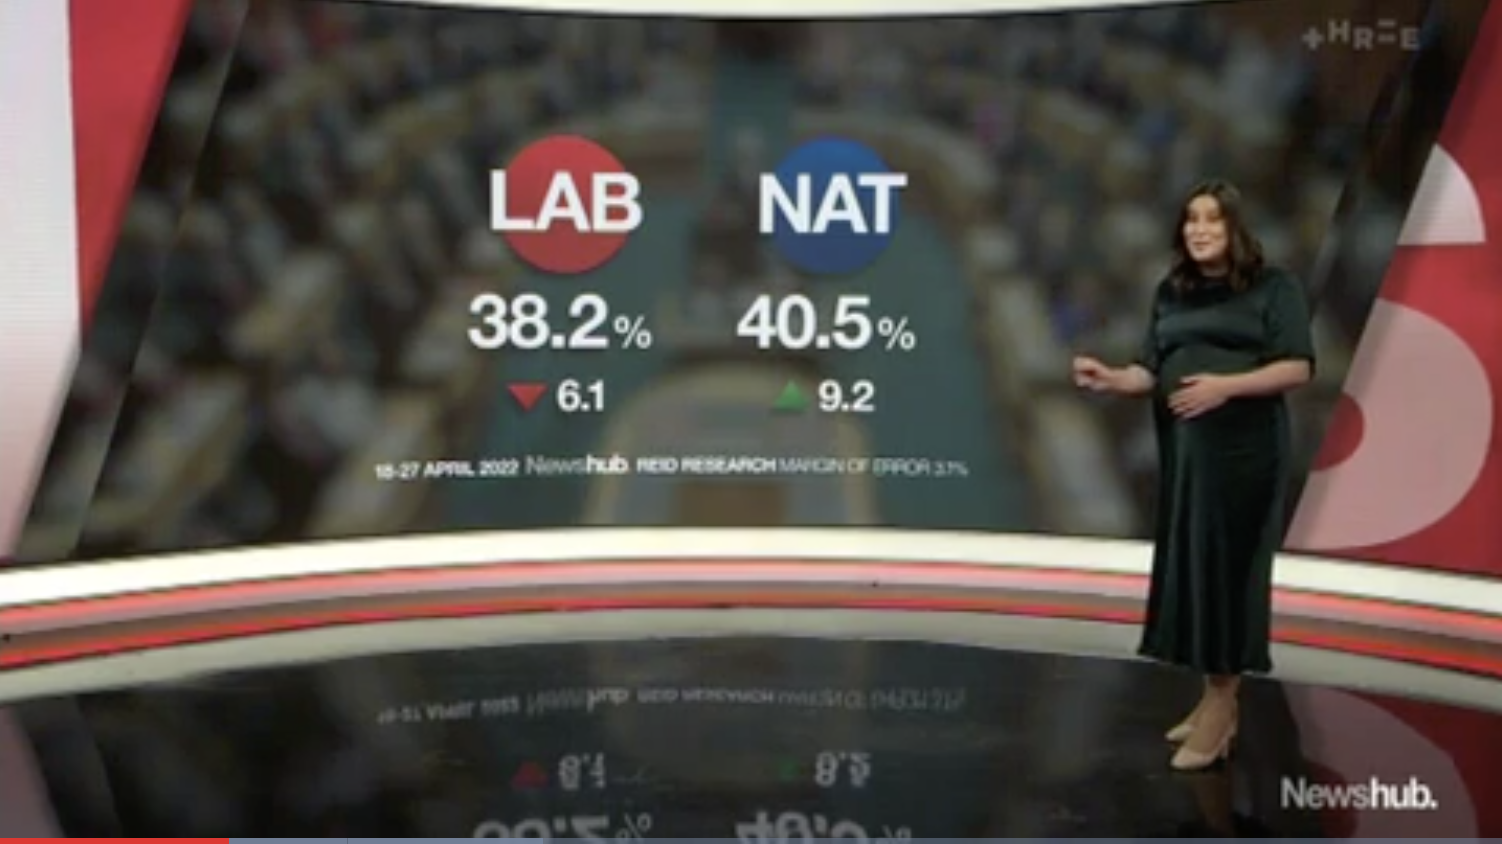 最新民调显示国家党的支持率超过劳工党